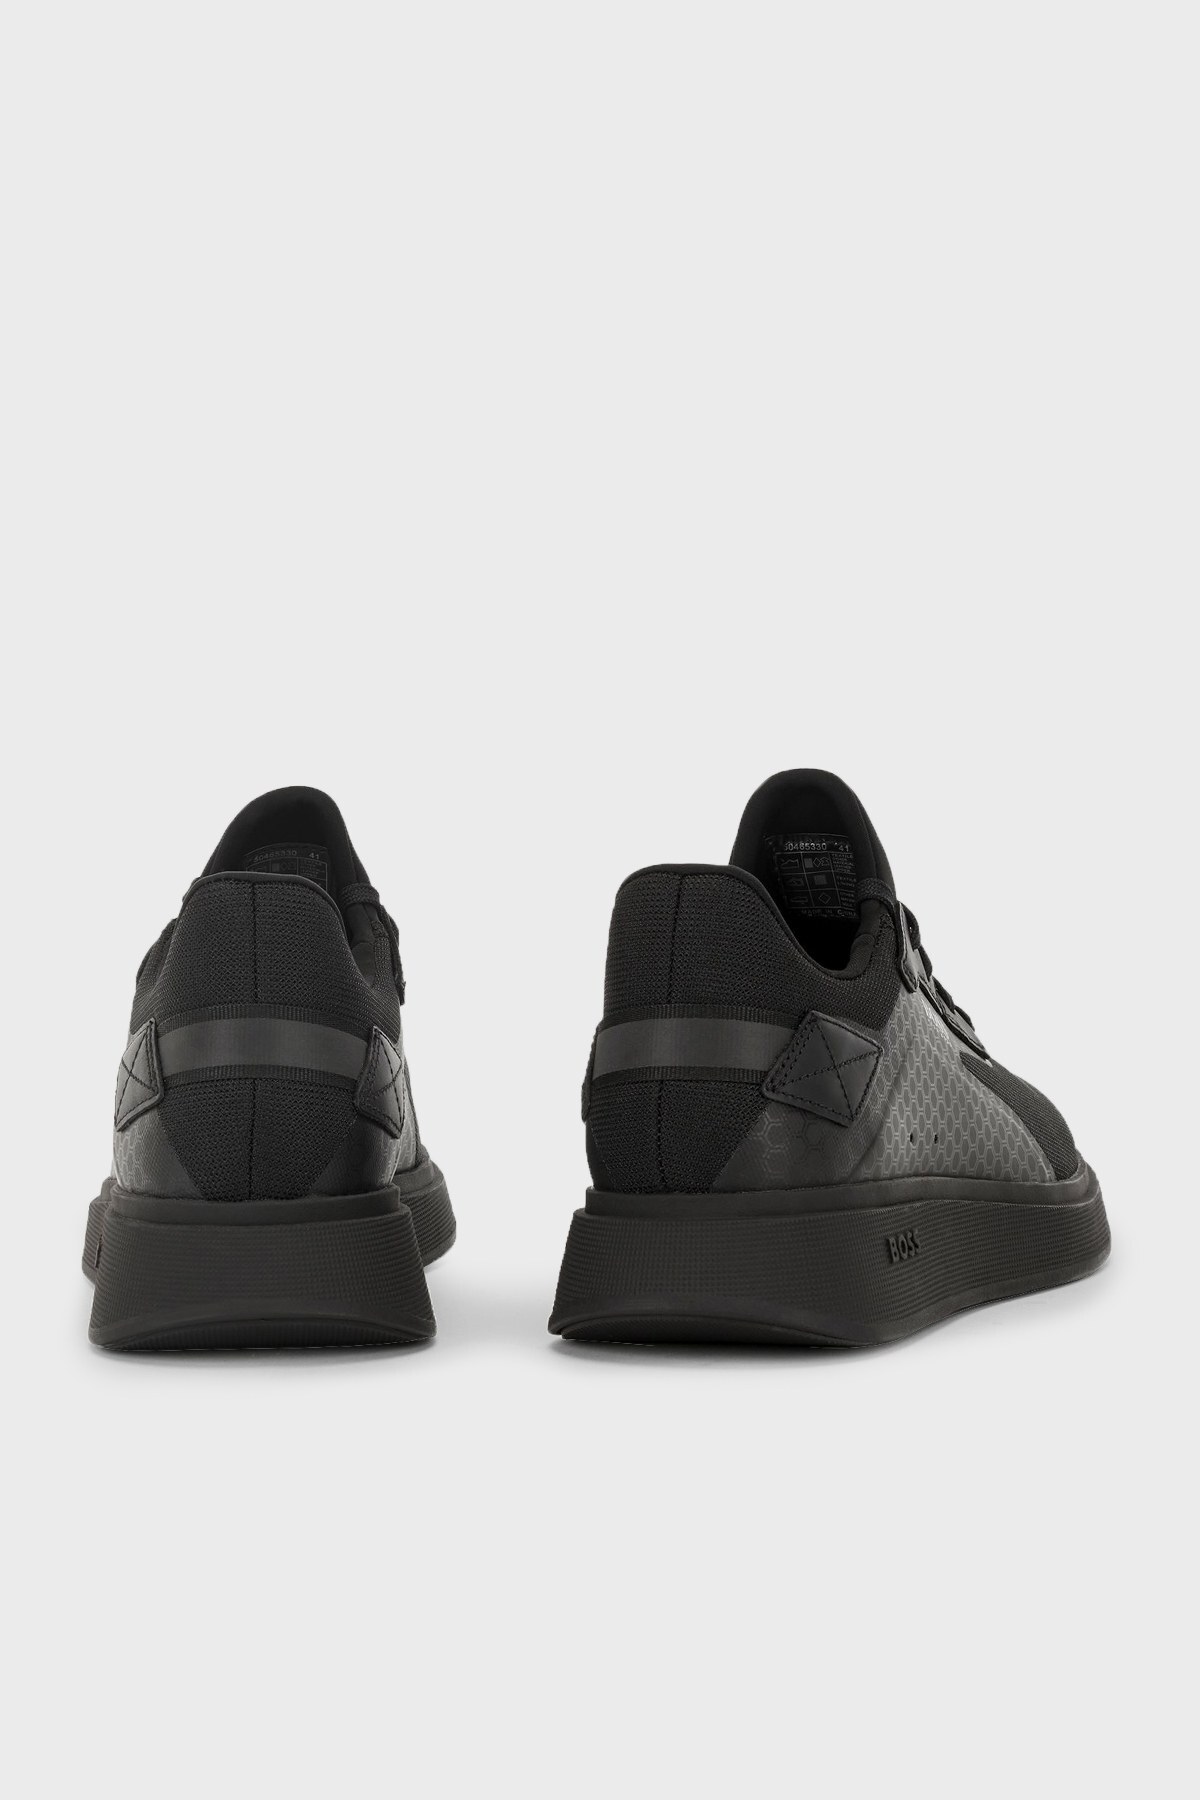 Hugo Boss Logolu Bağcıklı Sneaker Erkek Ayakkabı 50465330 001 SİYAH